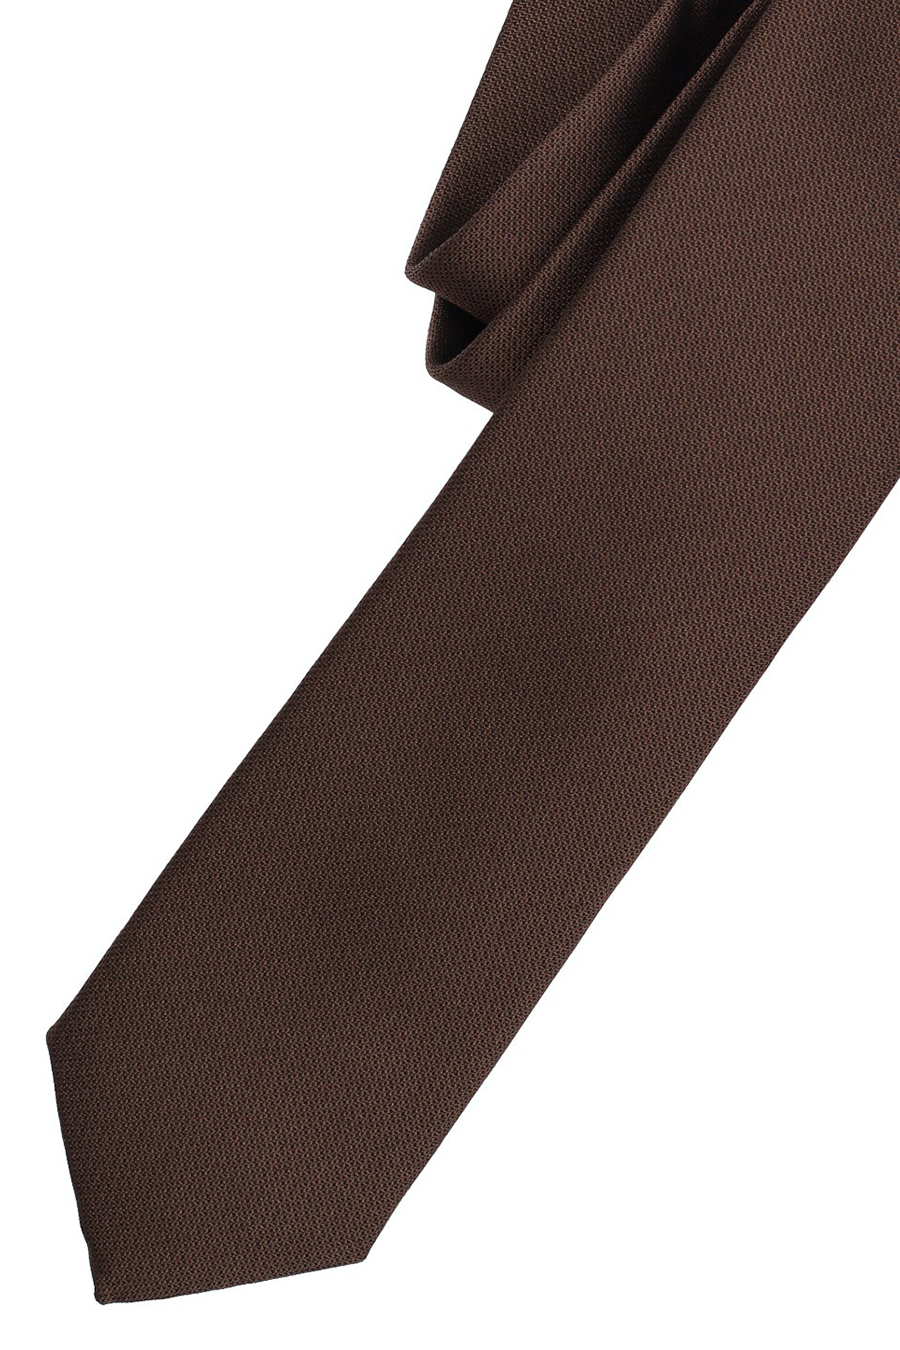 VENTI Krawatte aus Seide Polyester und breit braun 5 cm